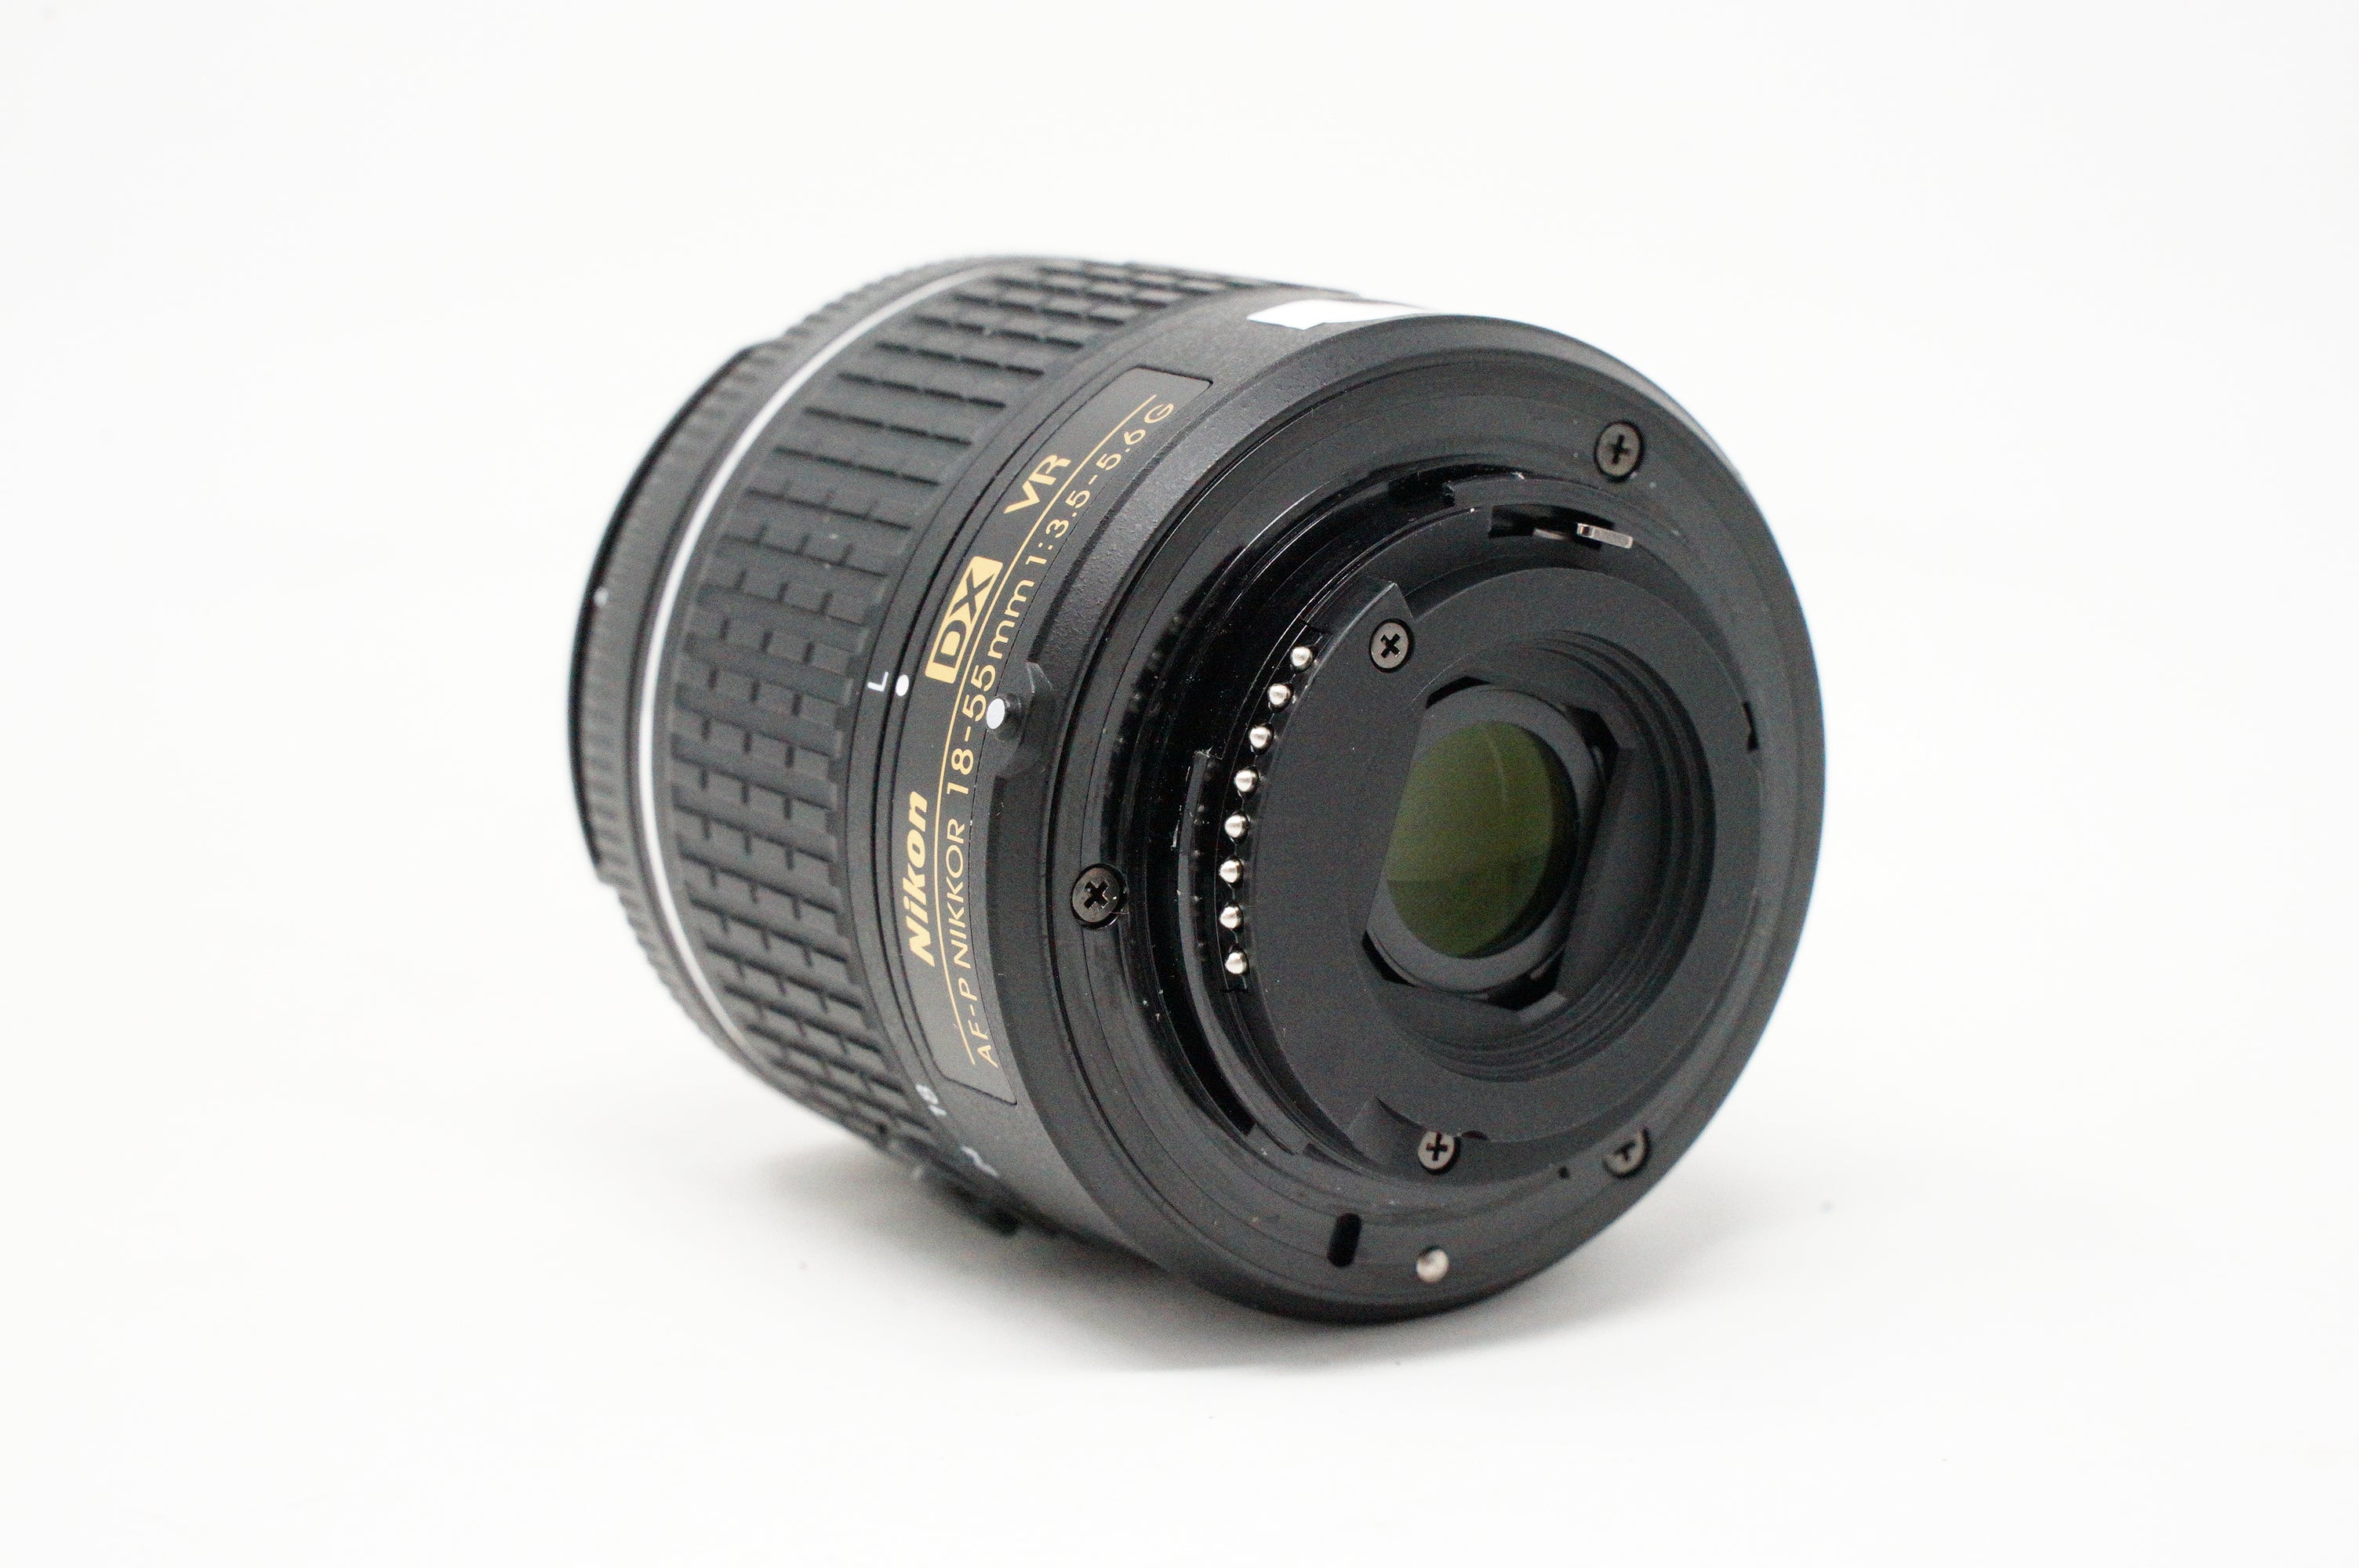 Used Nikon AF-P Nikkor 18-55mm F3.5/5.6G VR Lens (SH39174)